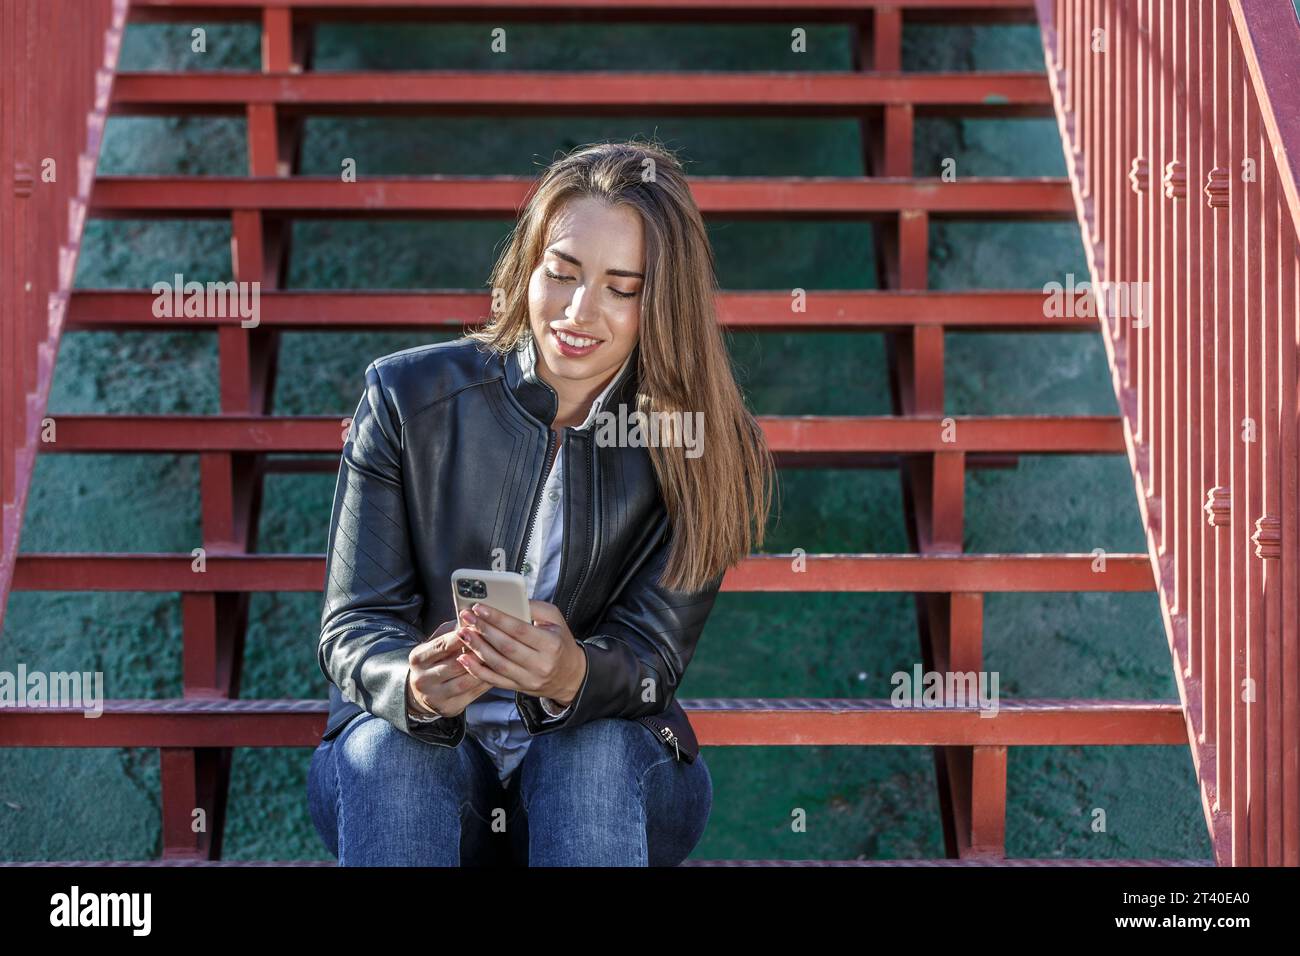 Giovane donna attraente con i capelli lunghi e chiari che indossa una giacca in pelle seduta su una scala rossa e chiacchierata sui social media tramite un moderno telefono cellulare Foto Stock